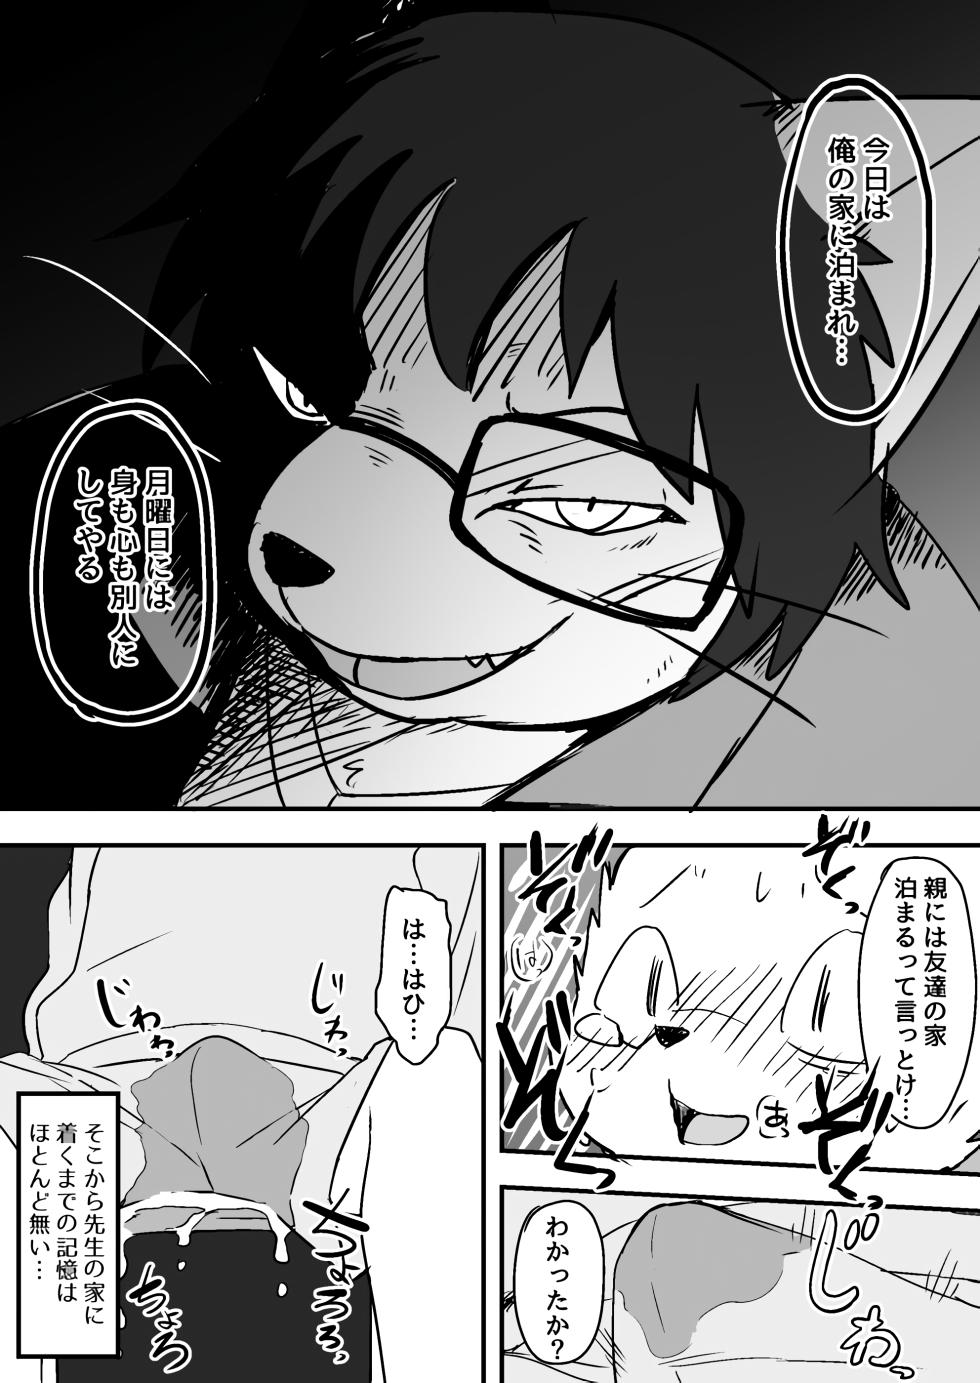 Manmosu Marimo - Sensei Story #1 (Raw) - Page 13